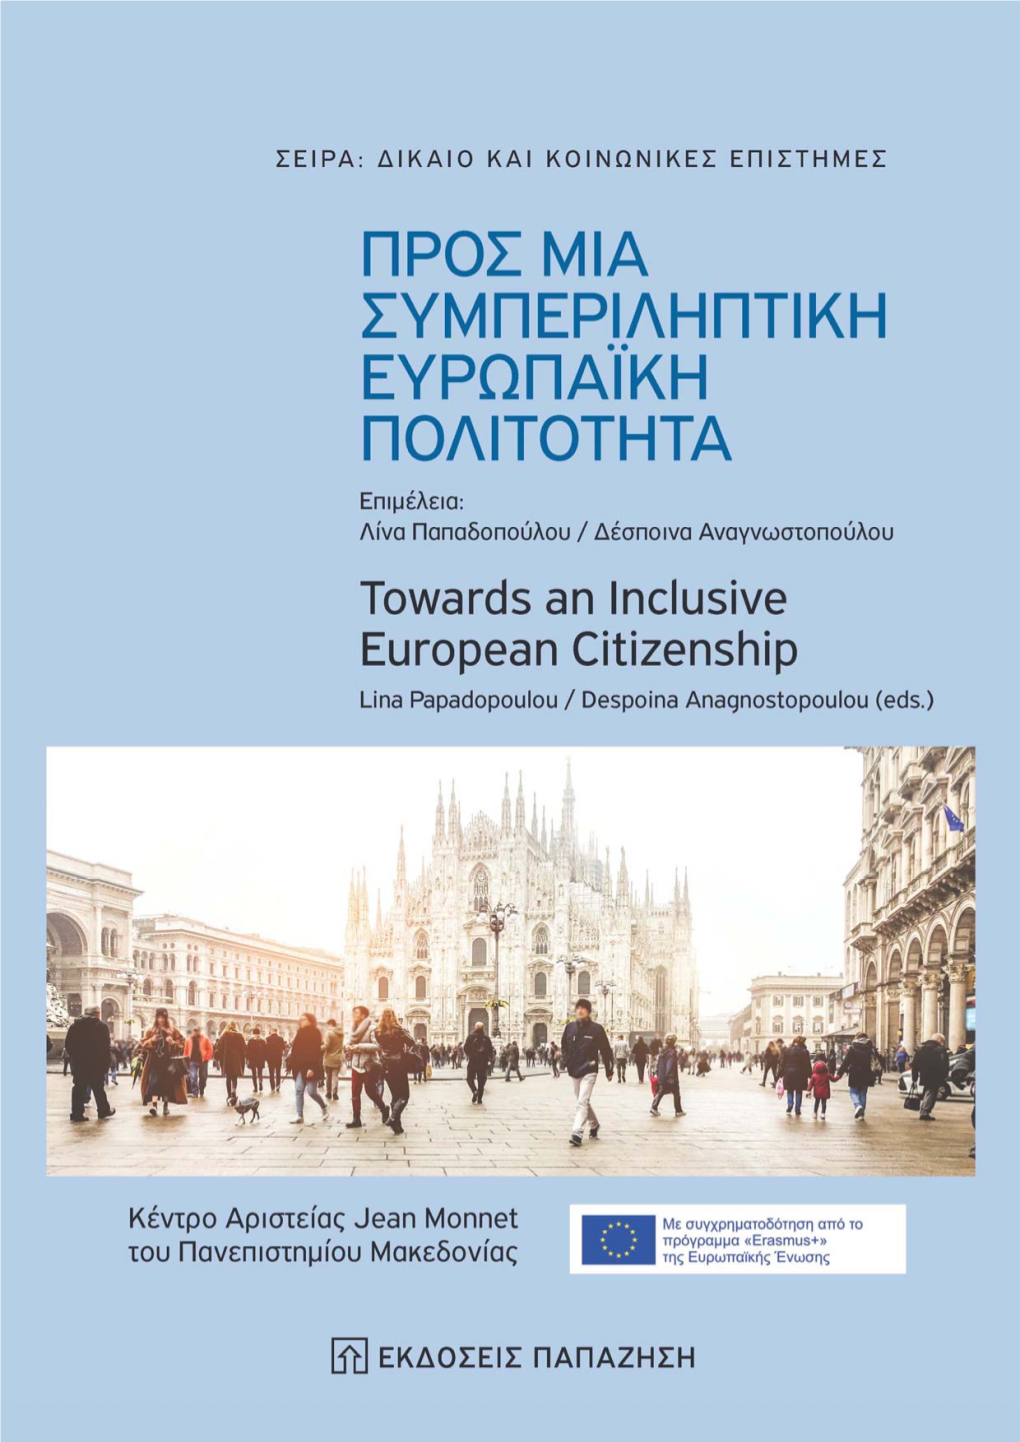 Προς Μια Συμπεριληπτικη Ευρωπαϊκη Πολιτοτητα Towards an Inclusive European Citizenship